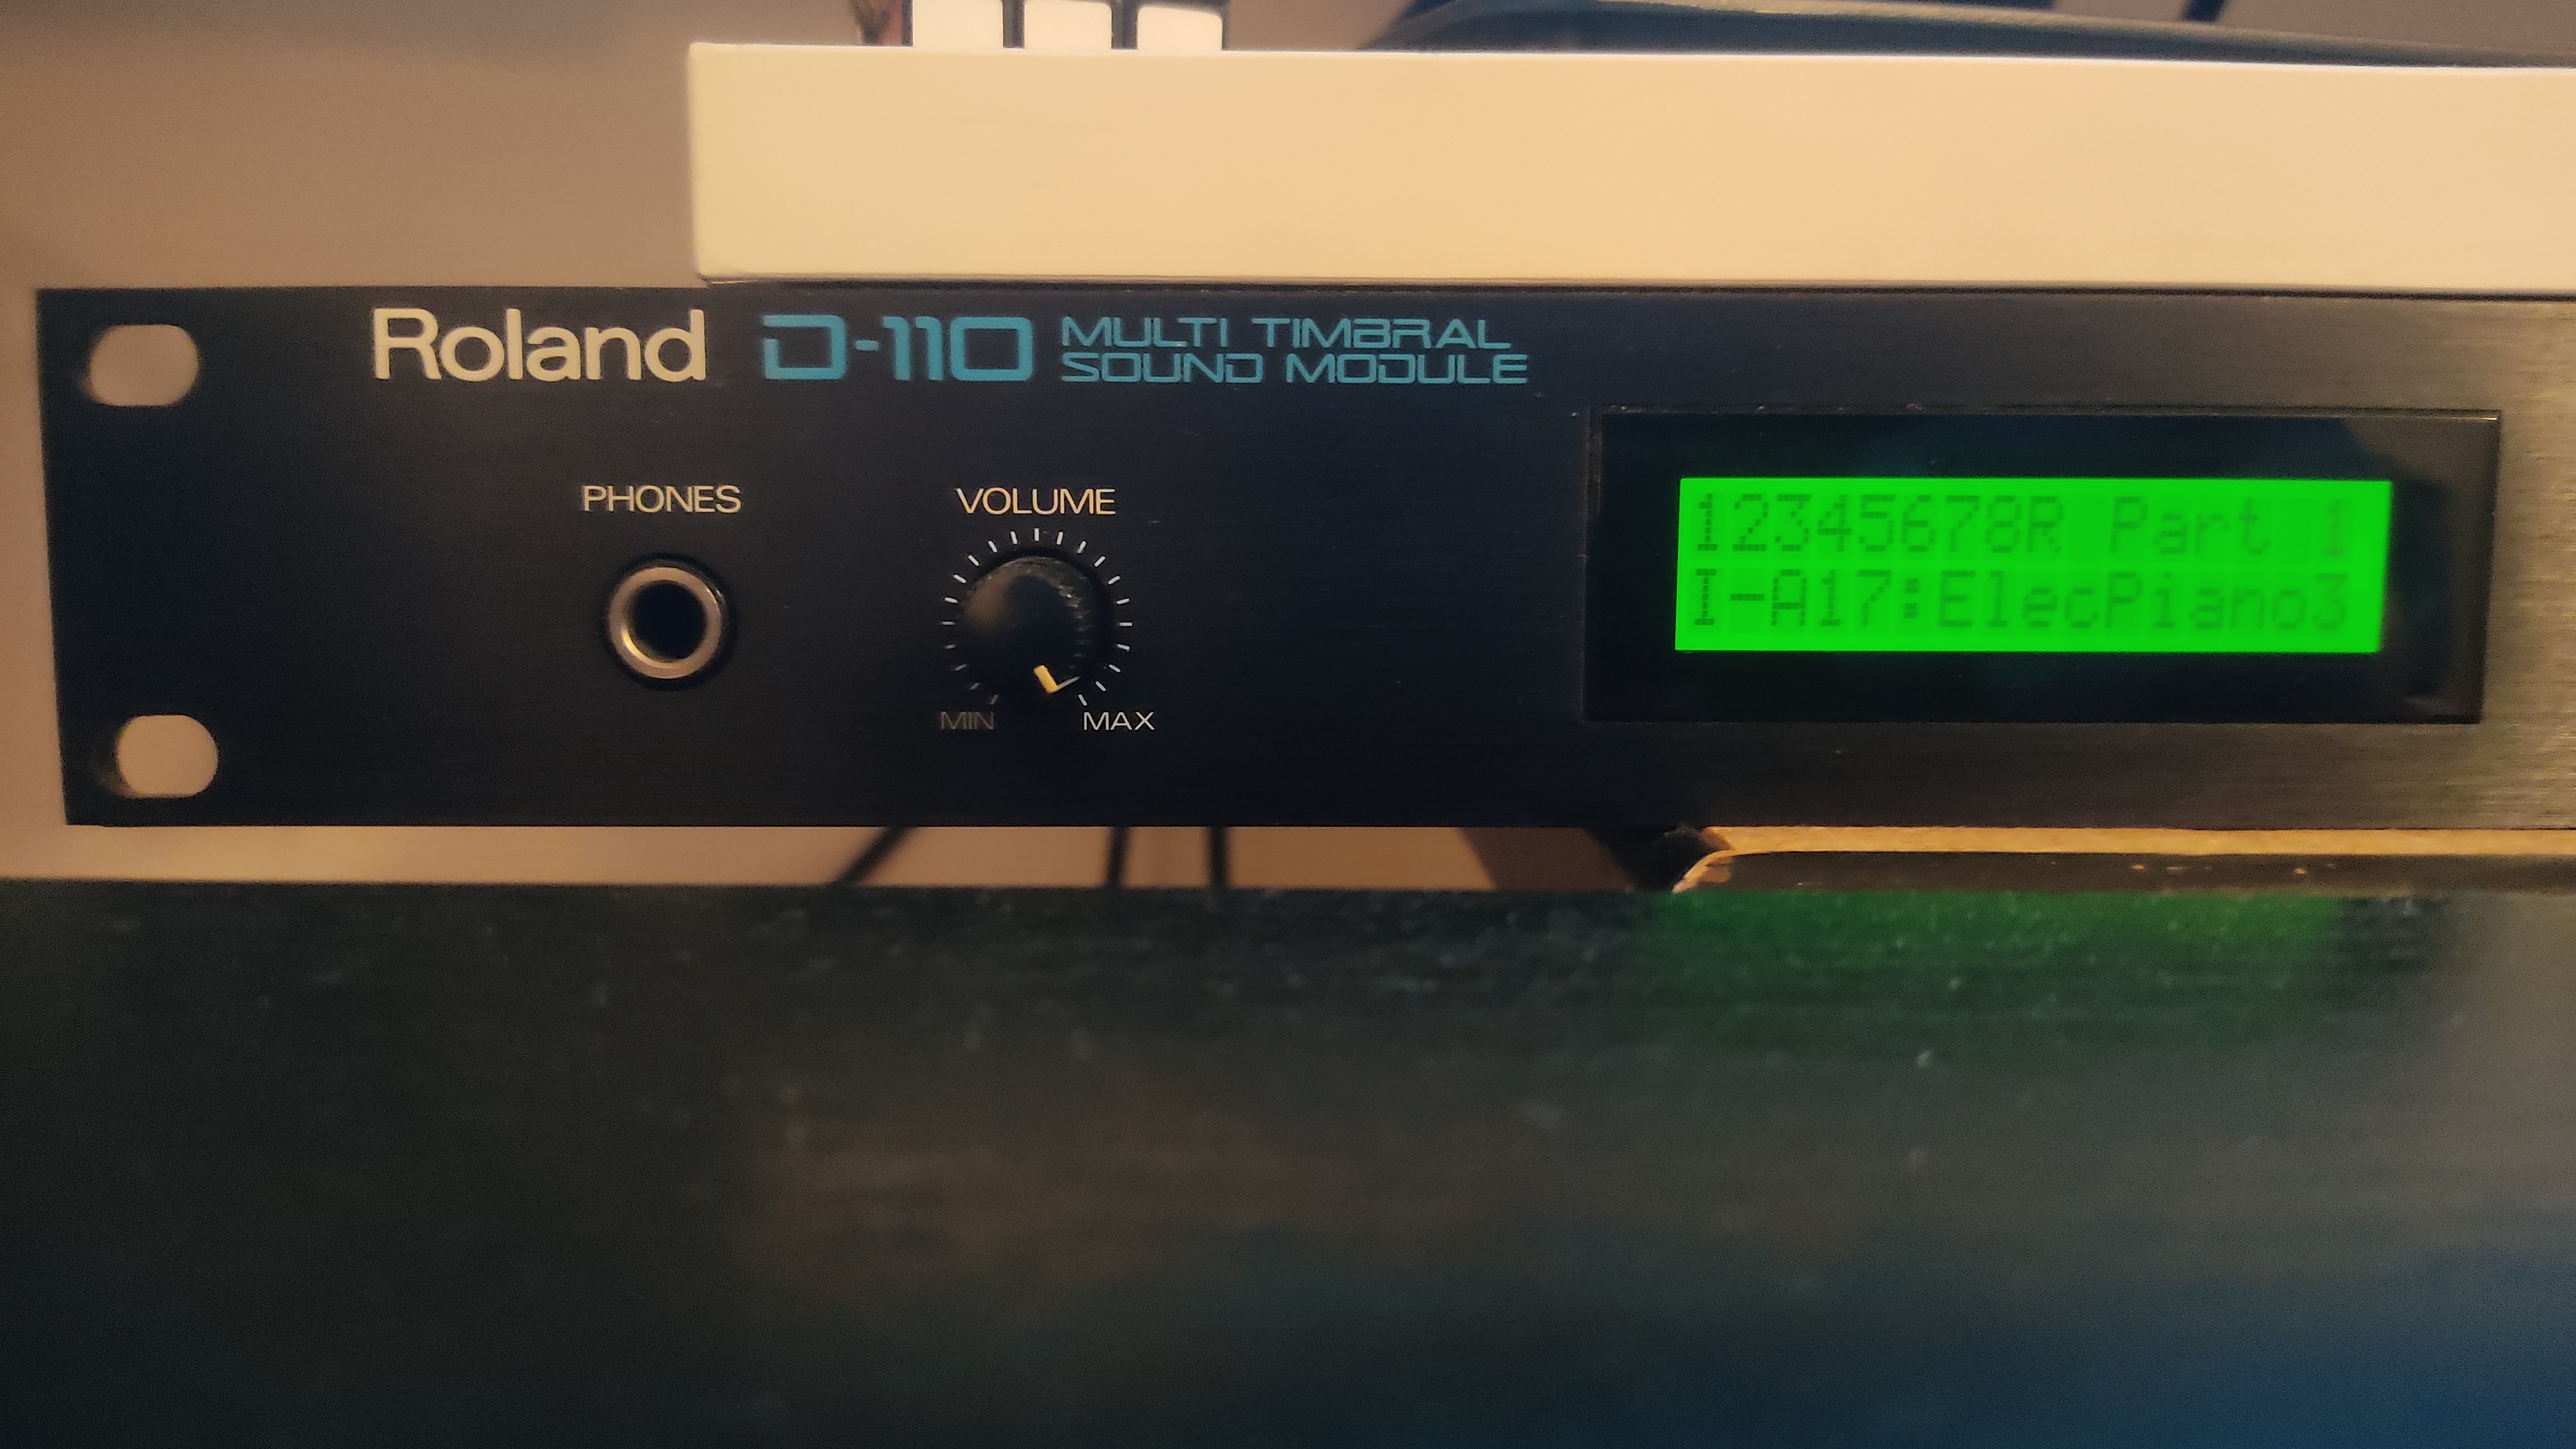 D-110 - Roland D-110 - Audiofanzine